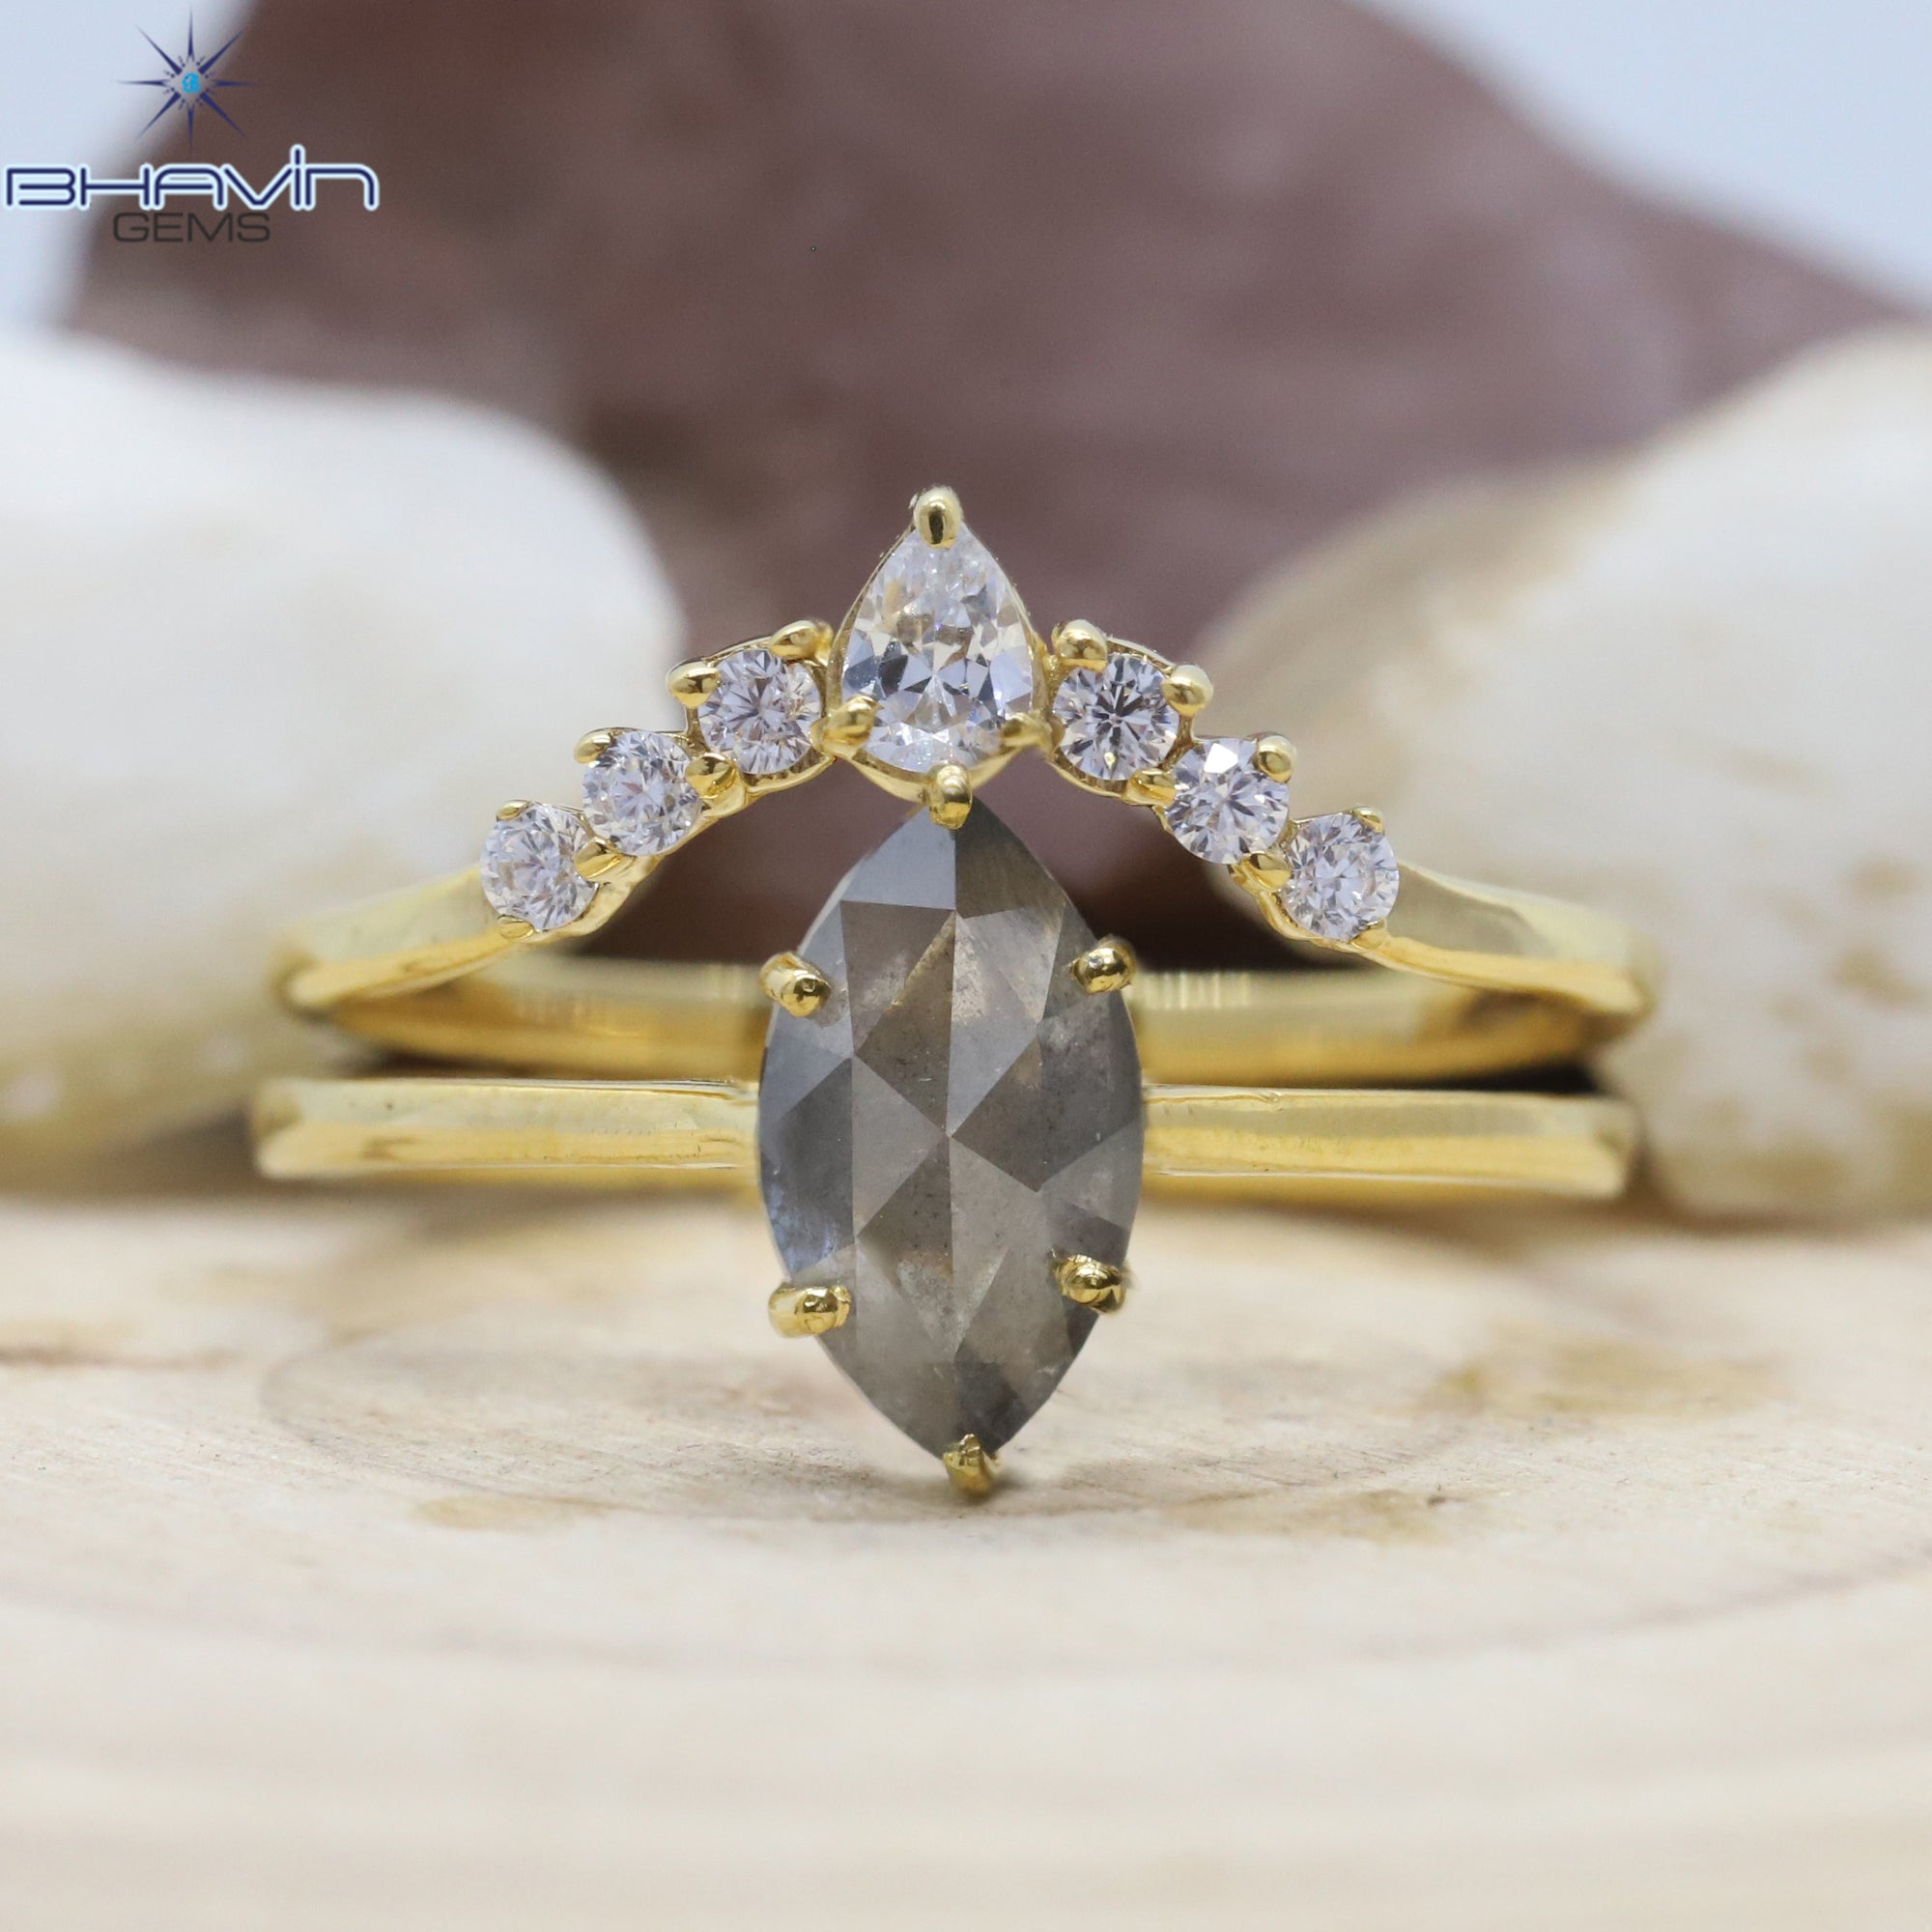 ゴールド リング, マーキス ダイヤモンド, ソルト アンド ペッパー ダイヤモンド, 天然ダイヤモンド リング, 婚約指輪, 結婚指輪, ダイヤモンド リング